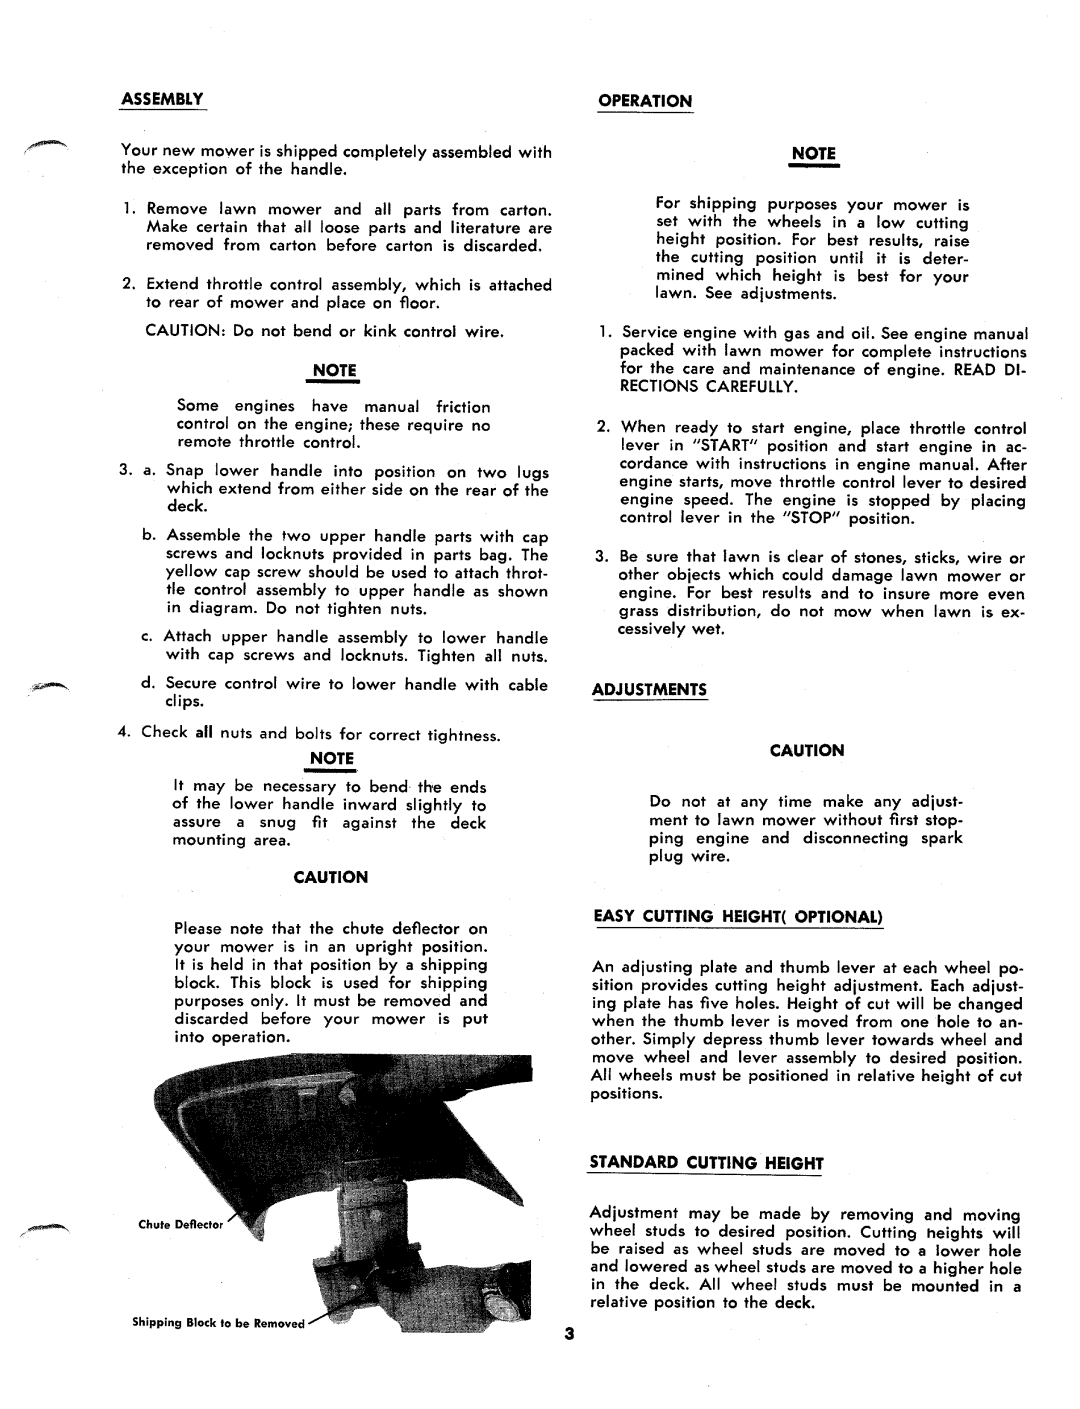 Bolens 114-030A, 114-090A manual 